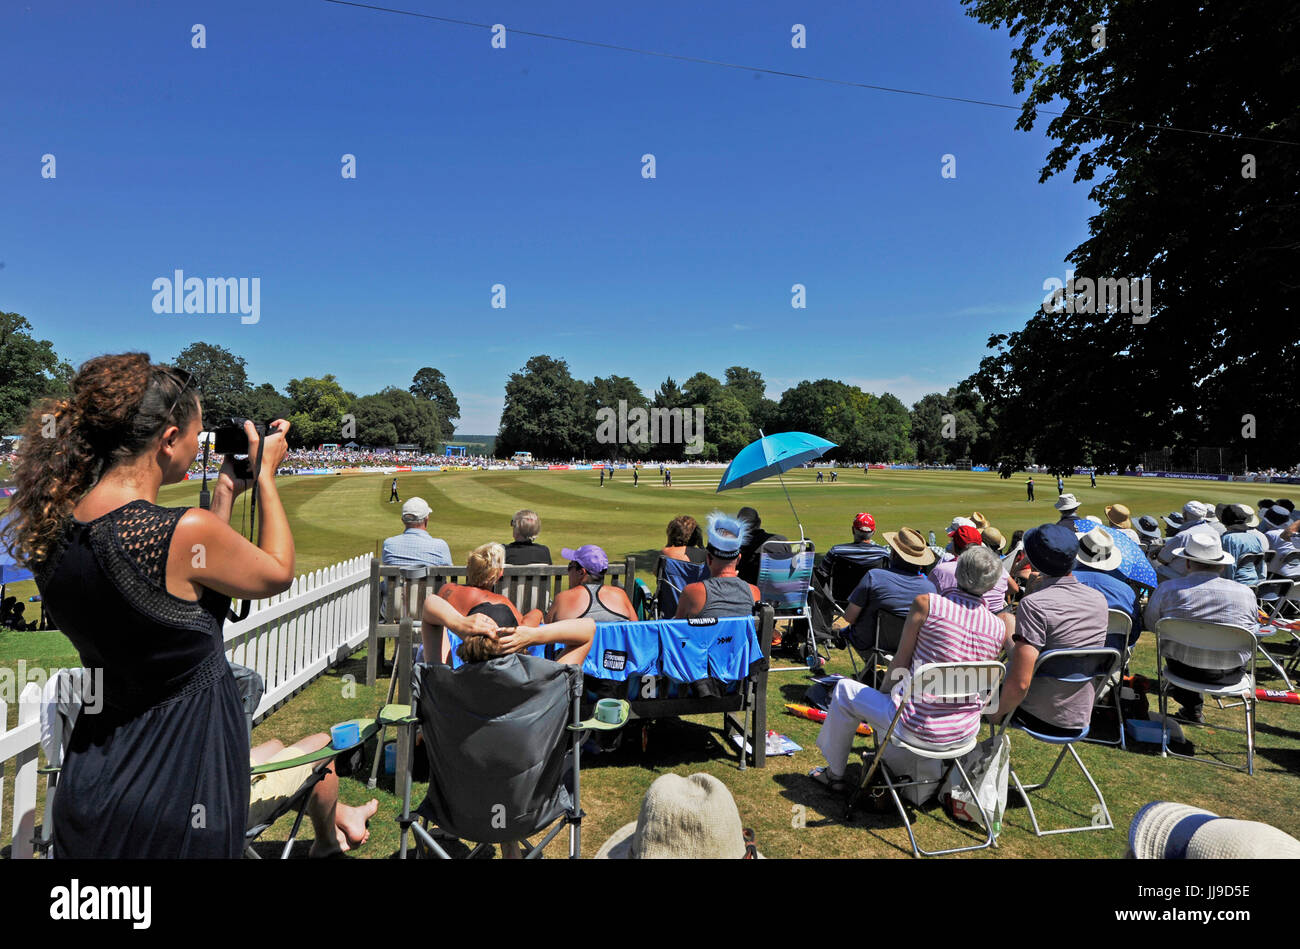 Sussex Sharks v Glamorgan dans la NatWest T20 match blast au château d'Arundel la masse dans le West Sussex UK Dimanche 9 juillet 2017 Banque D'Images